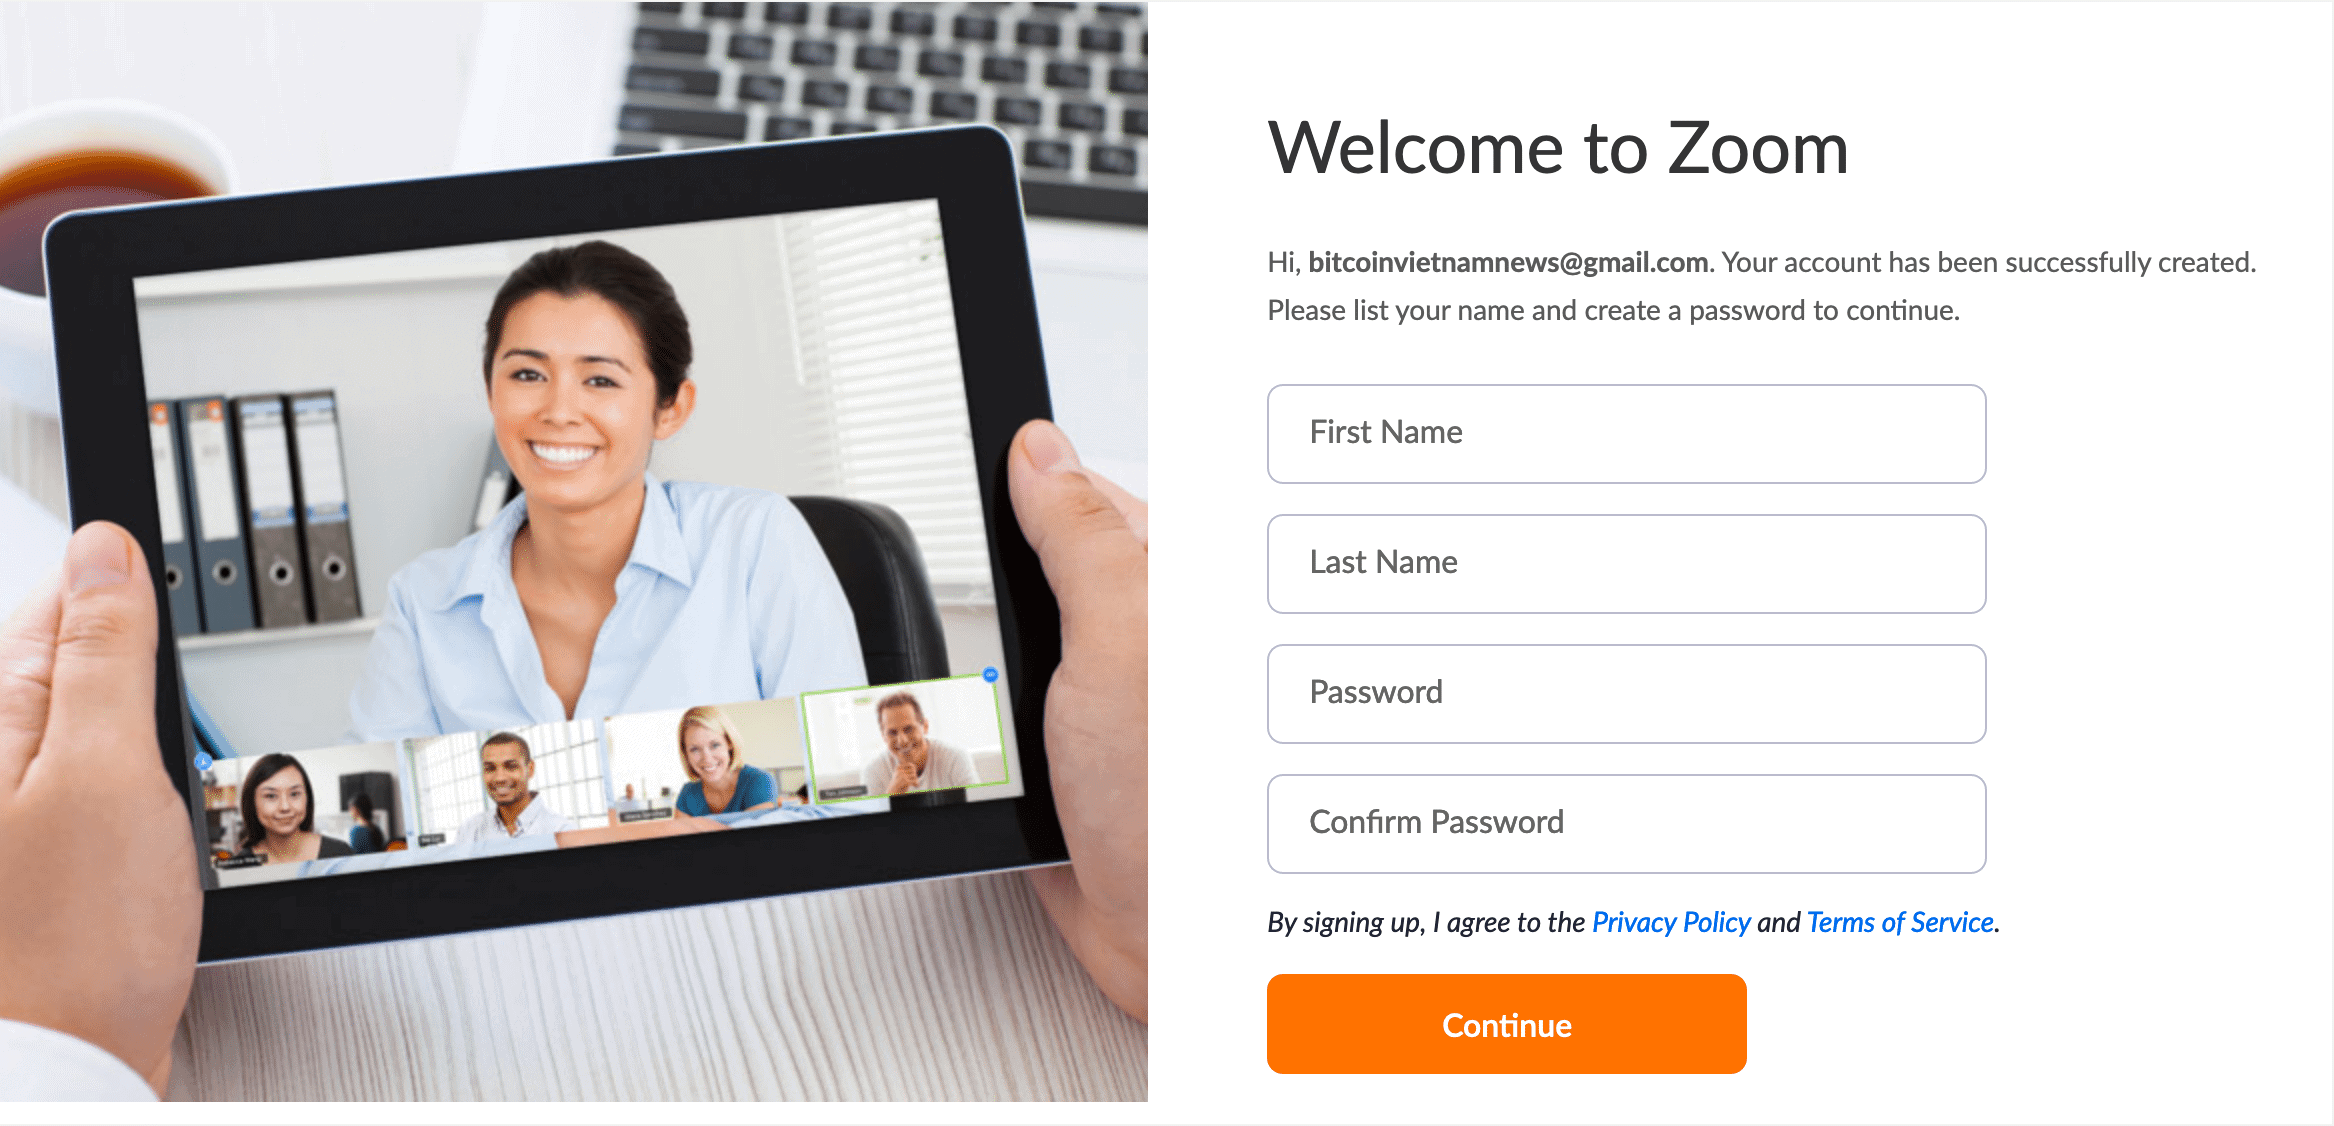 Zoom Cloud Meetings là gì? Hướng dẫn sử dụng ZOOM từ A đến Z